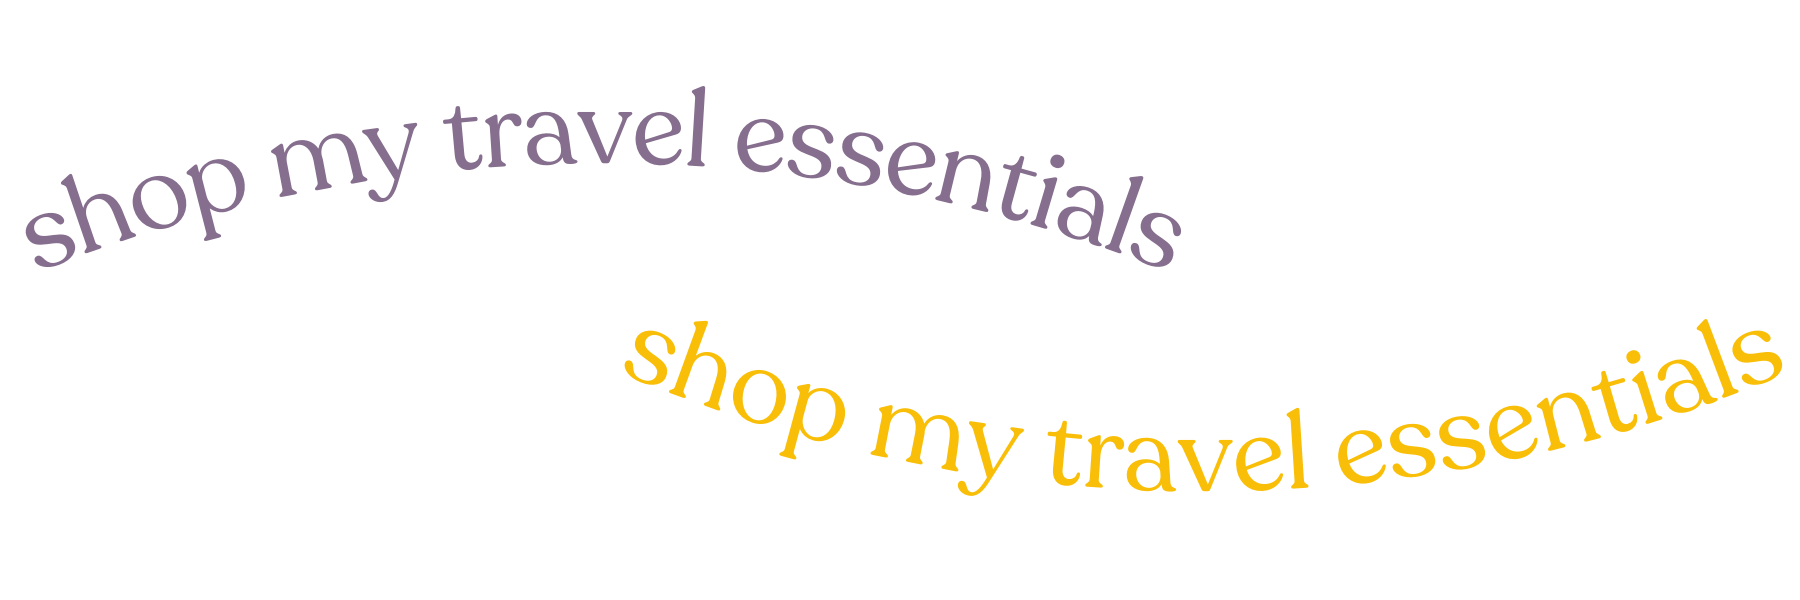 shop my travel essentials